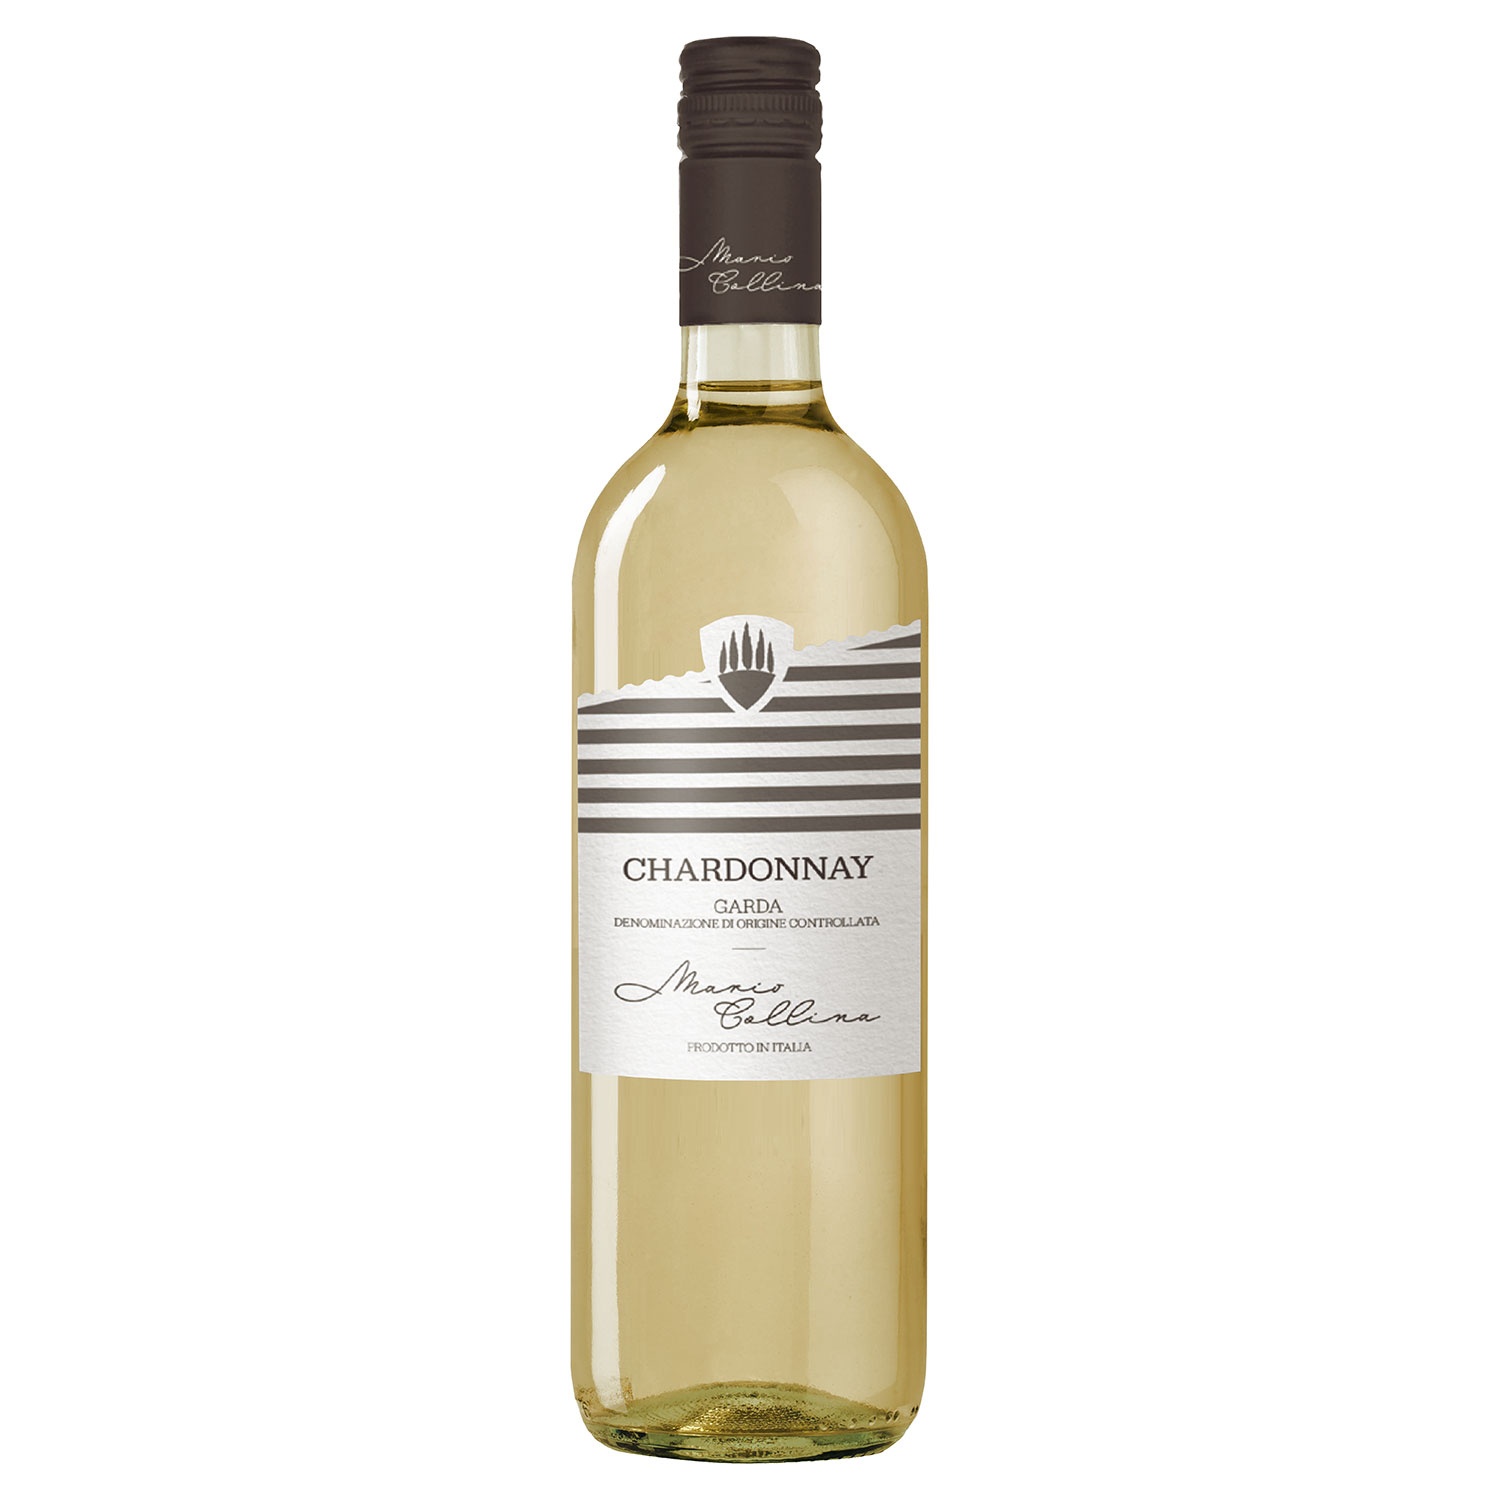 MARIO COLLINA Chardonnay Garda DOC 0,75 l